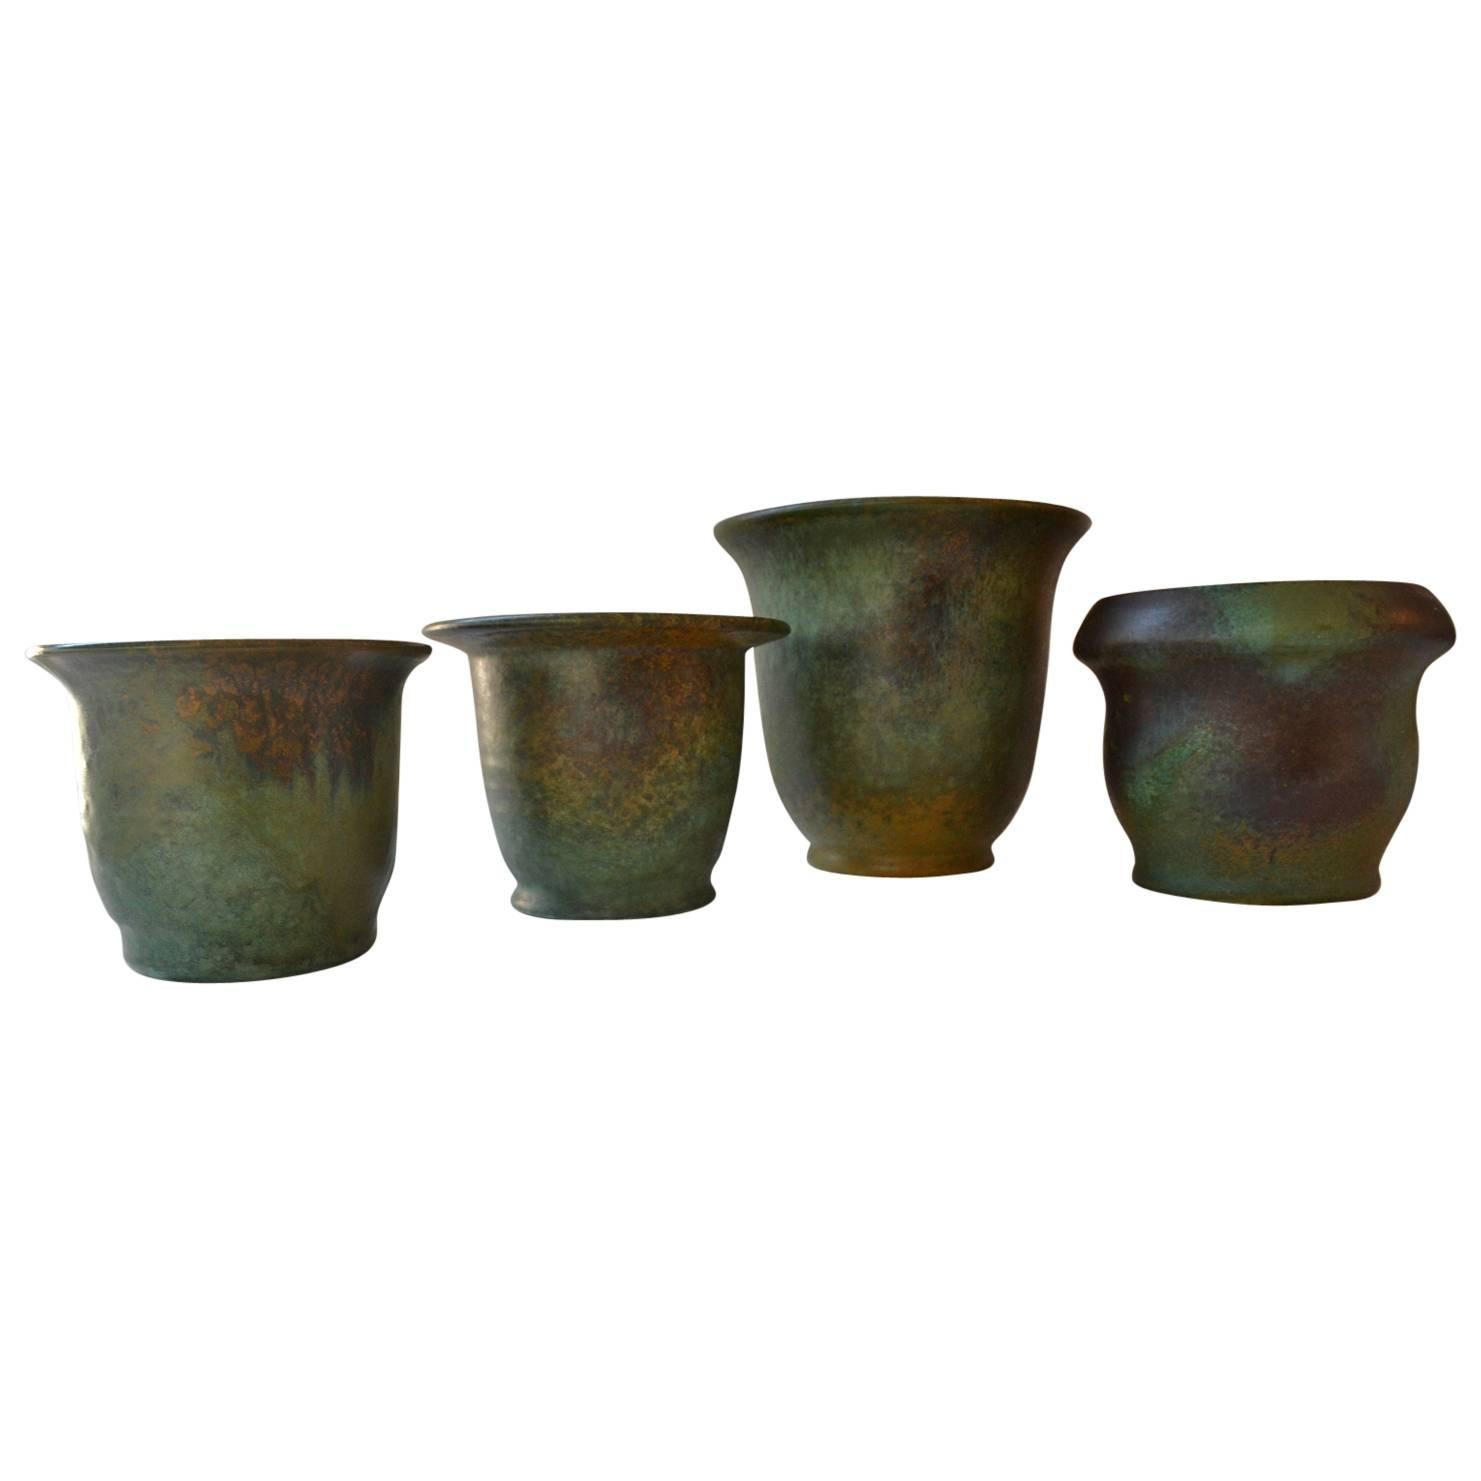 Groupe de quatre vases ou pots de fleurs en céramique d'atelier de différentes tailles avec une patine vive en couleurs oxydées typiques de l'Art Déco, signés par le néerlandais Frans van Katwijk.